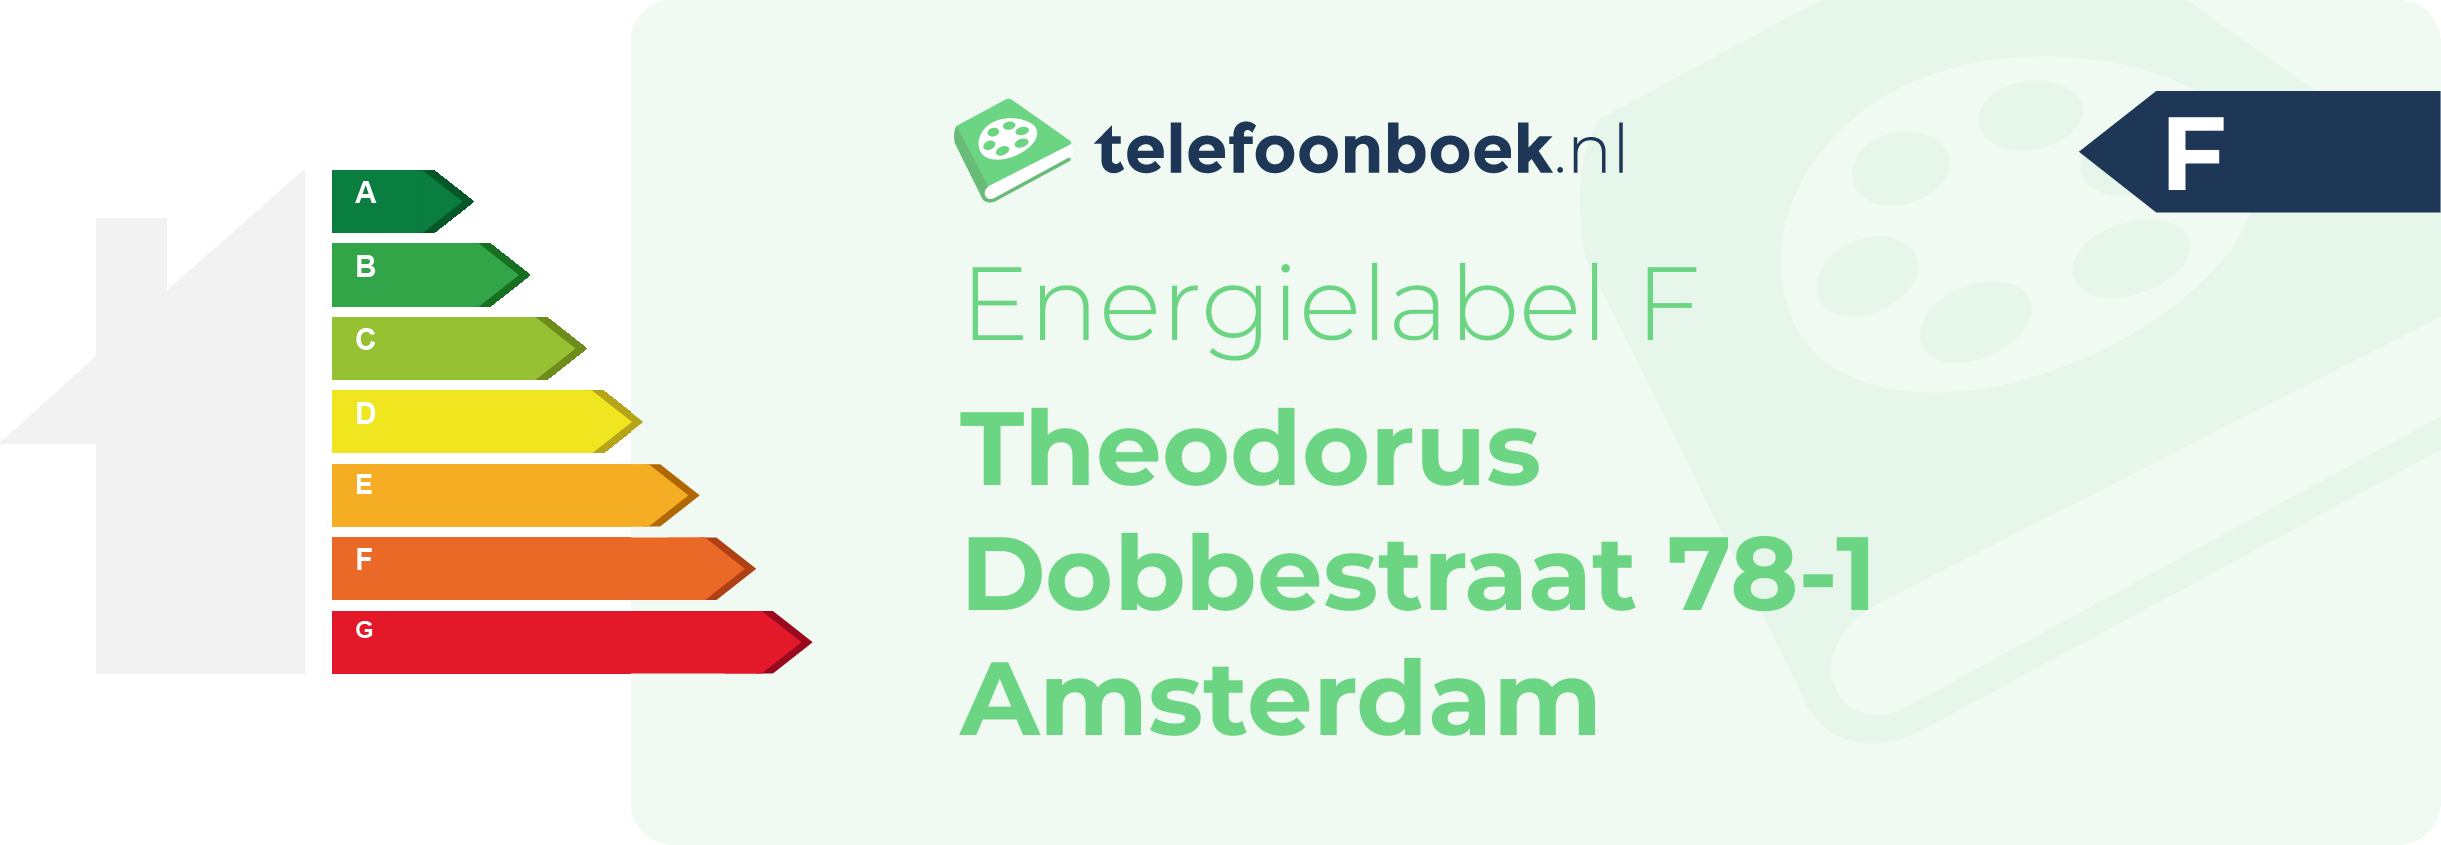 Energielabel Theodorus Dobbestraat 78-1 Amsterdam